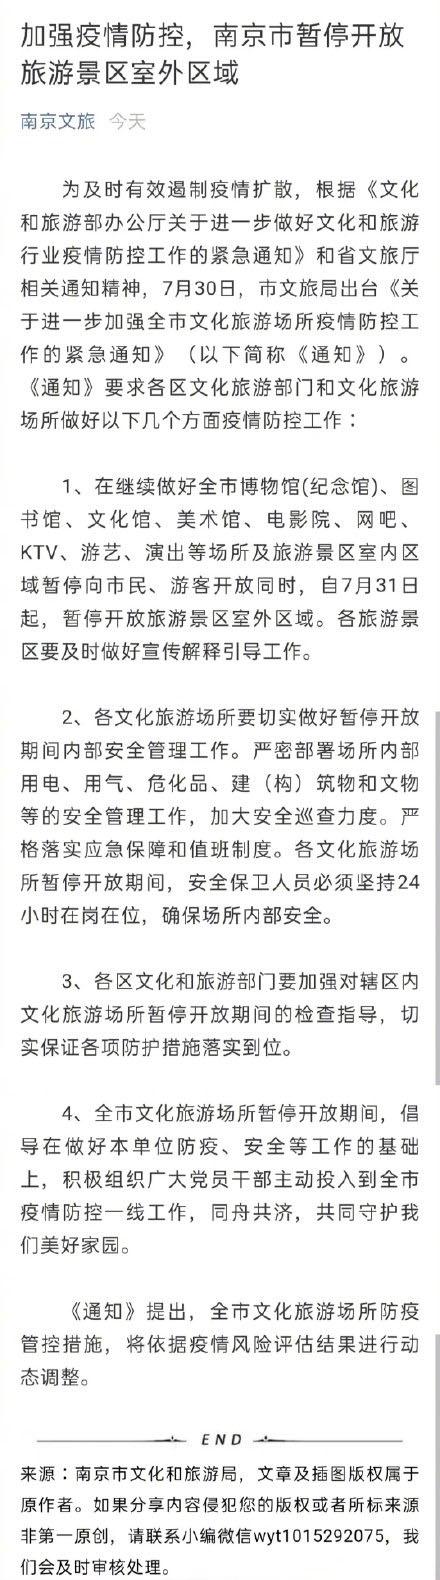 南京疫情最新消息 南京暂停开放旅游景区和室外区域